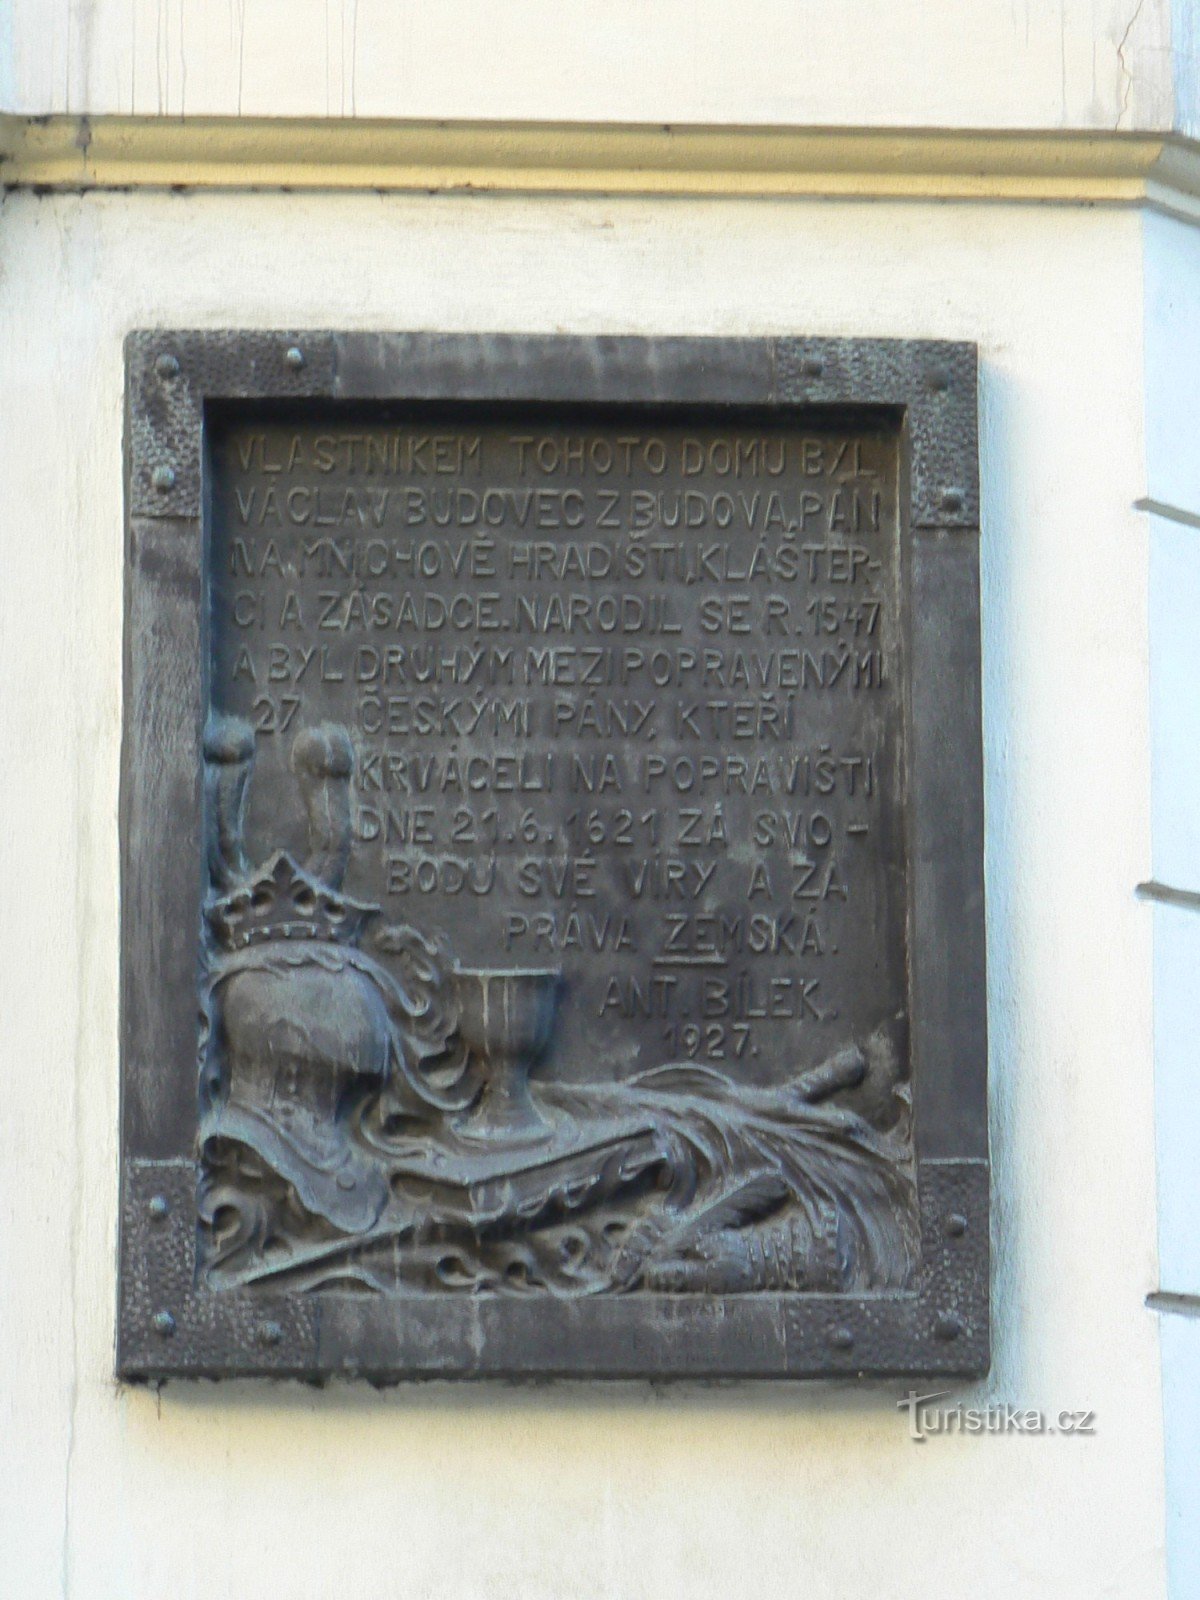 Αναμνηστική πλακέτα Václav Budovec από το Budov